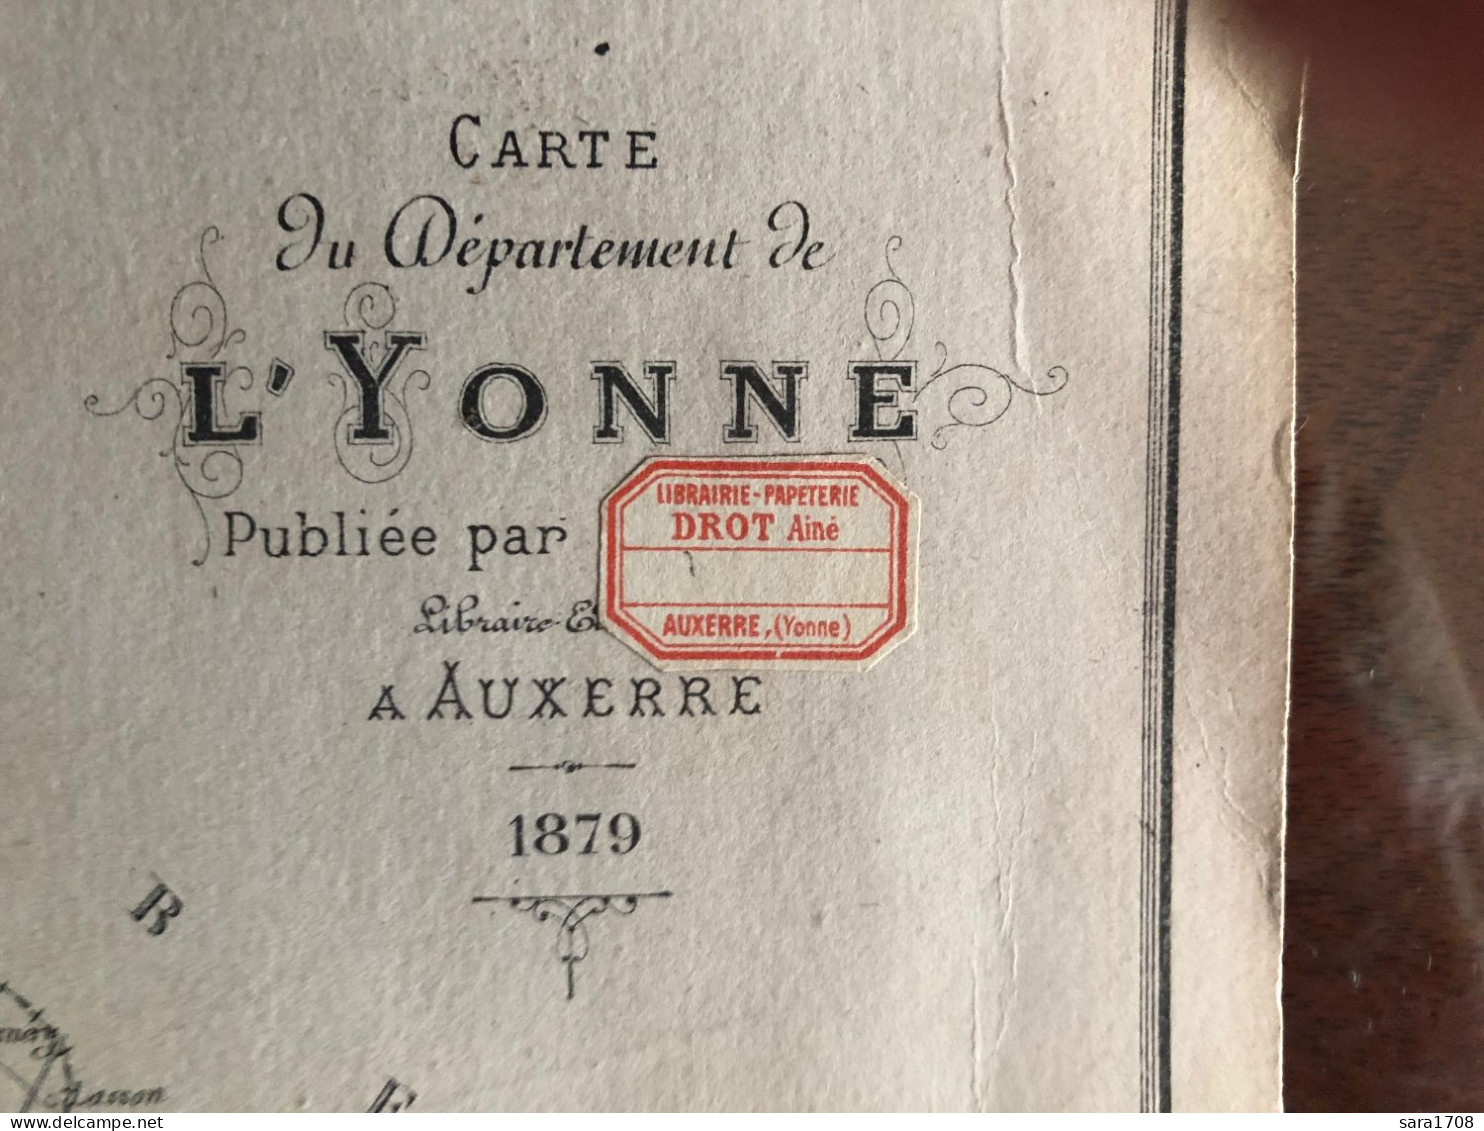 Carte Du Dép De L'YONNE, Par DROT Ainé à AUXERRE En 1879. Lithographie Par G. ROUILLE à Auxerre. PORT GRATUIT FRANCE. - Lithographies